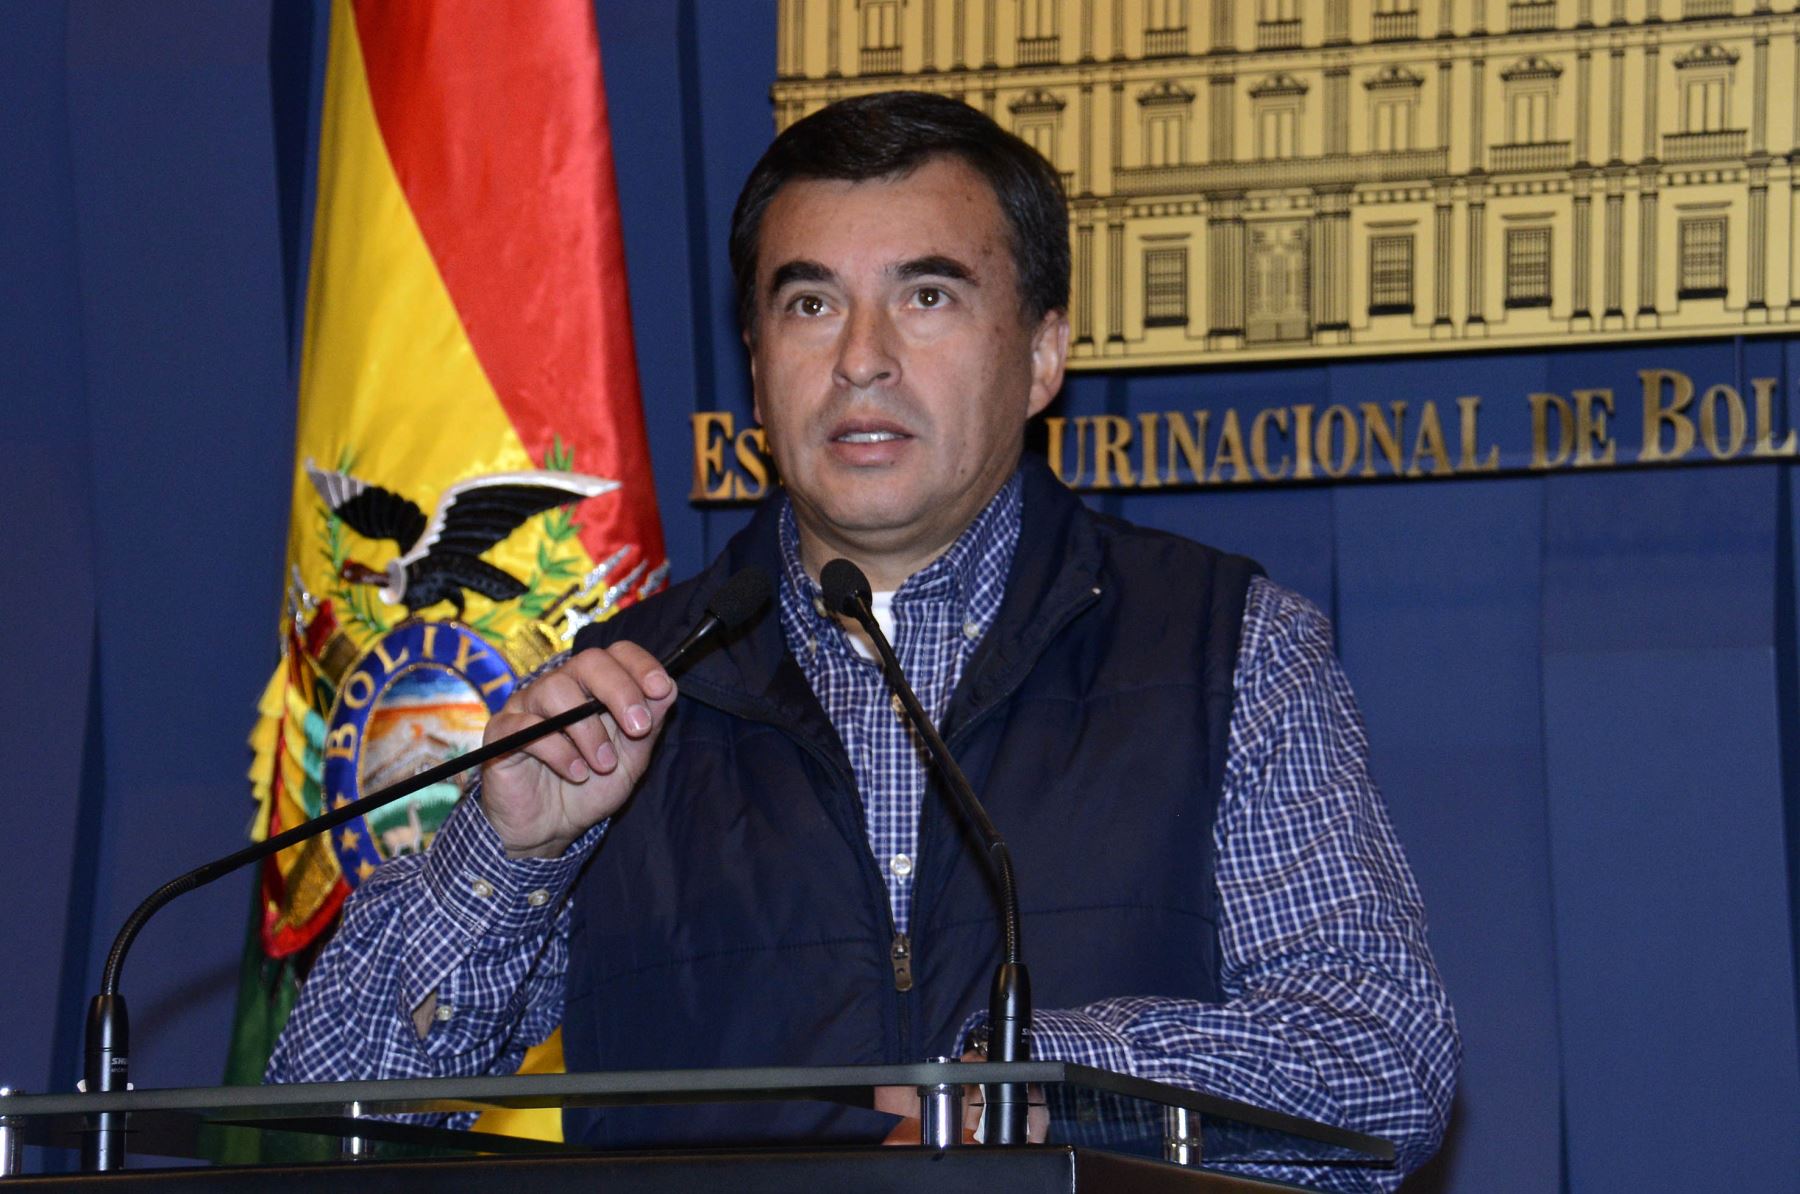 El ministro de la Presidencia, Juan Ramón Quintana, confirmó la fuga del empresario peruano Martín Belaunde Lossio. Difusión